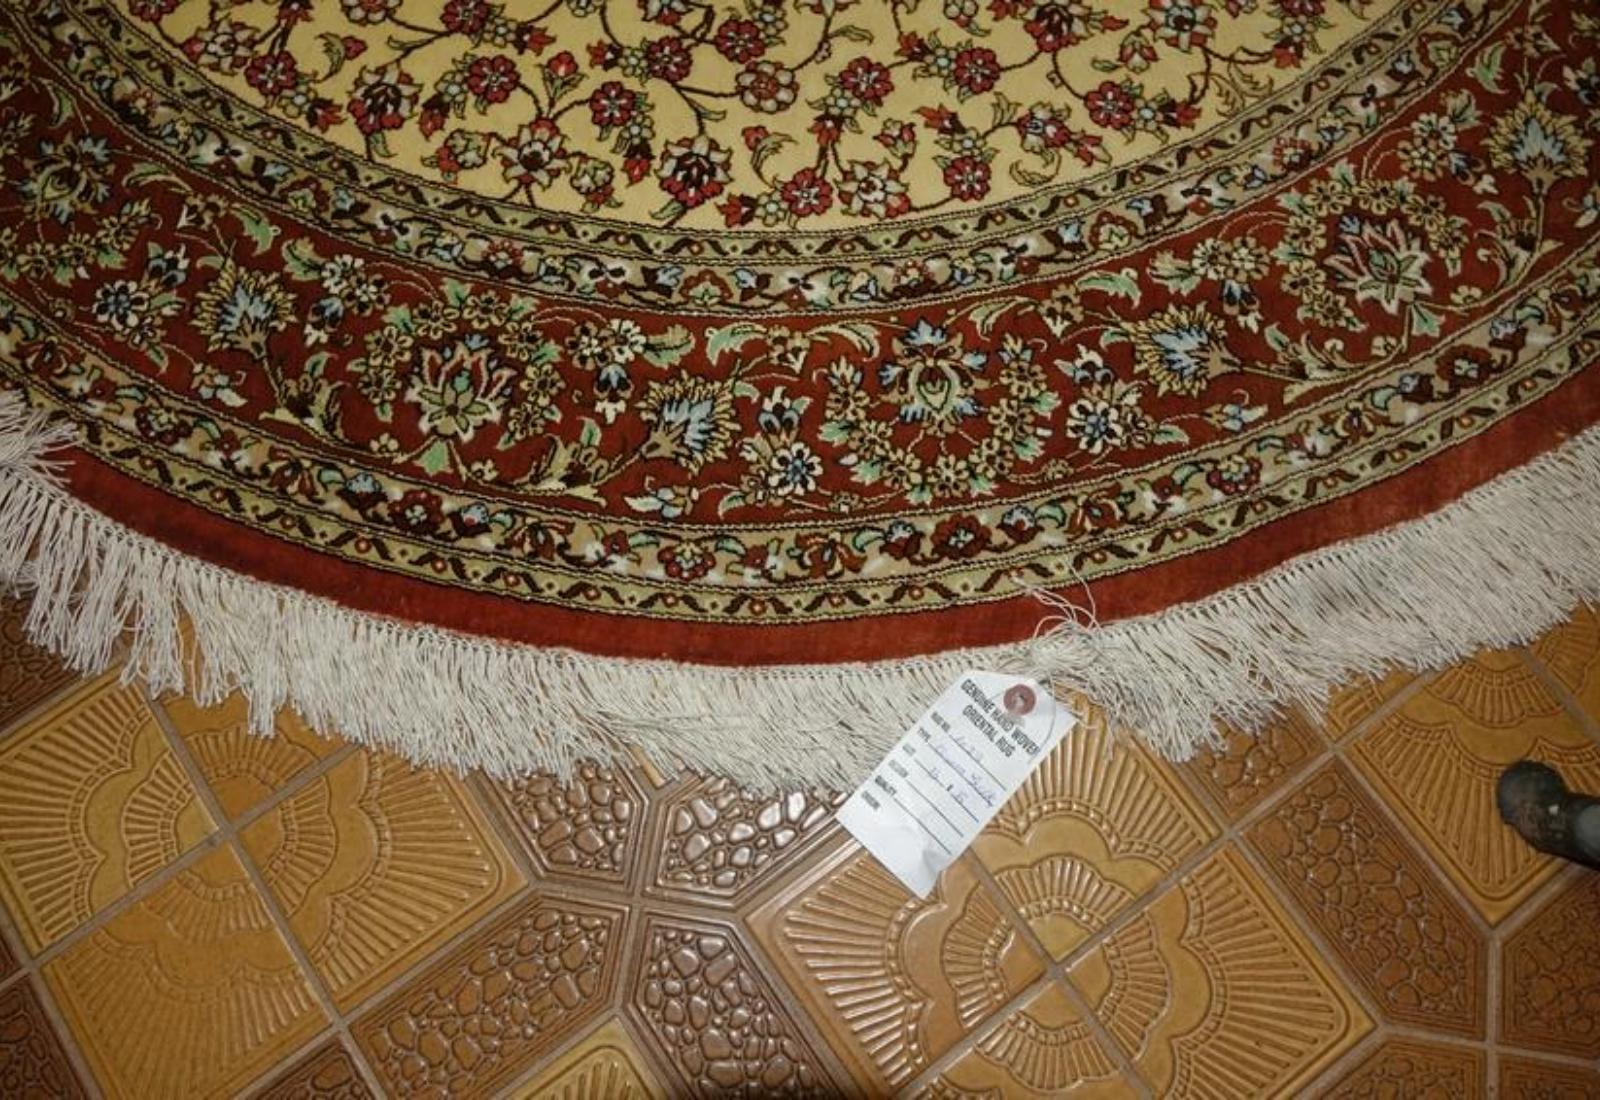 Very fine Persian Silk Qum - 5' 5' For Sale 3